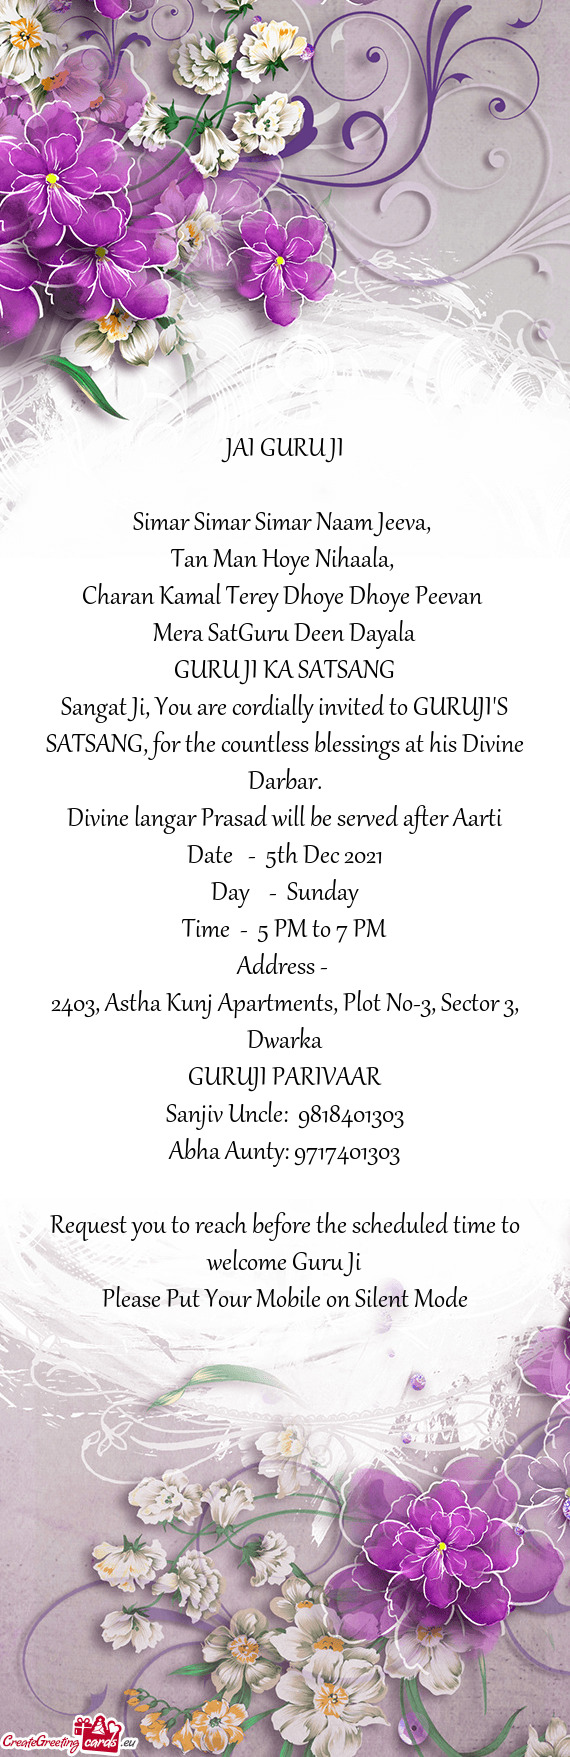 Sangat Ji, You are cordially invited to GURUJI